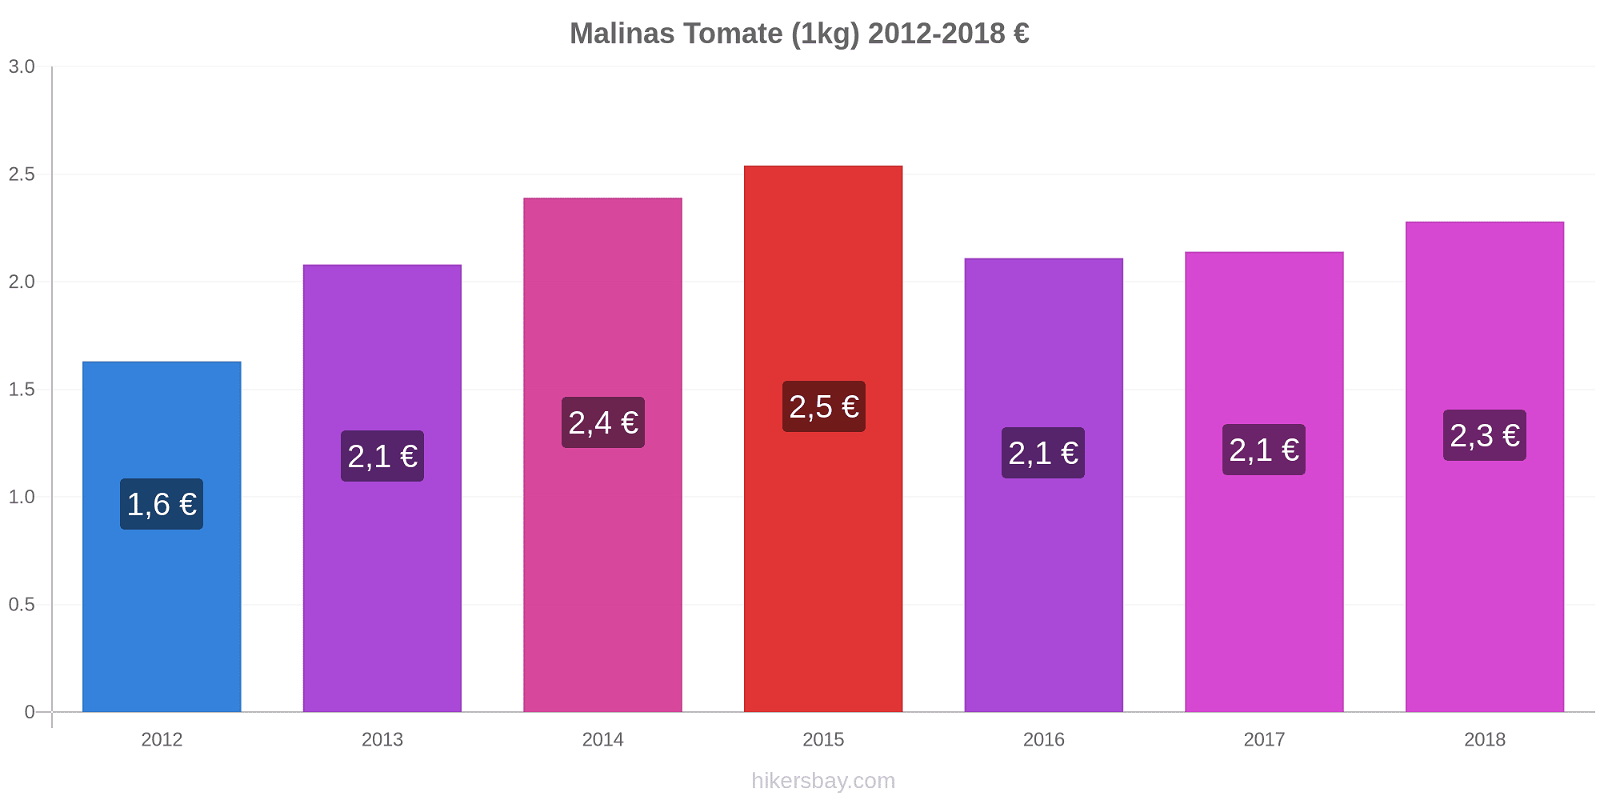 Malinas cambios de precios Tomate (1kg) hikersbay.com